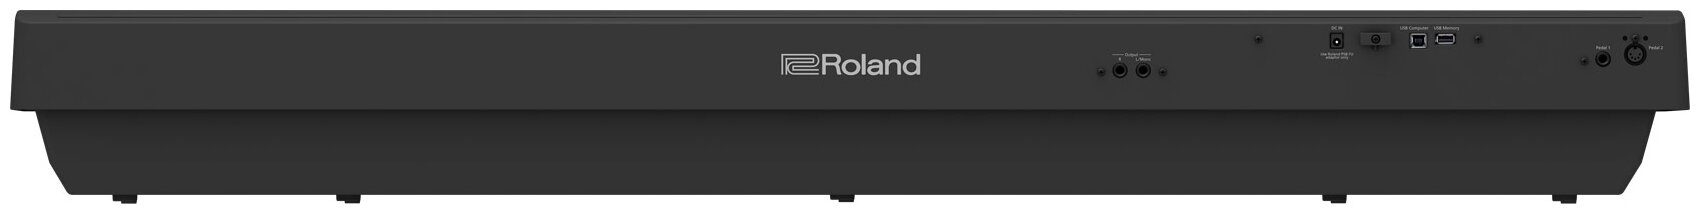 Цифровое фортепиано Roland - фото №2